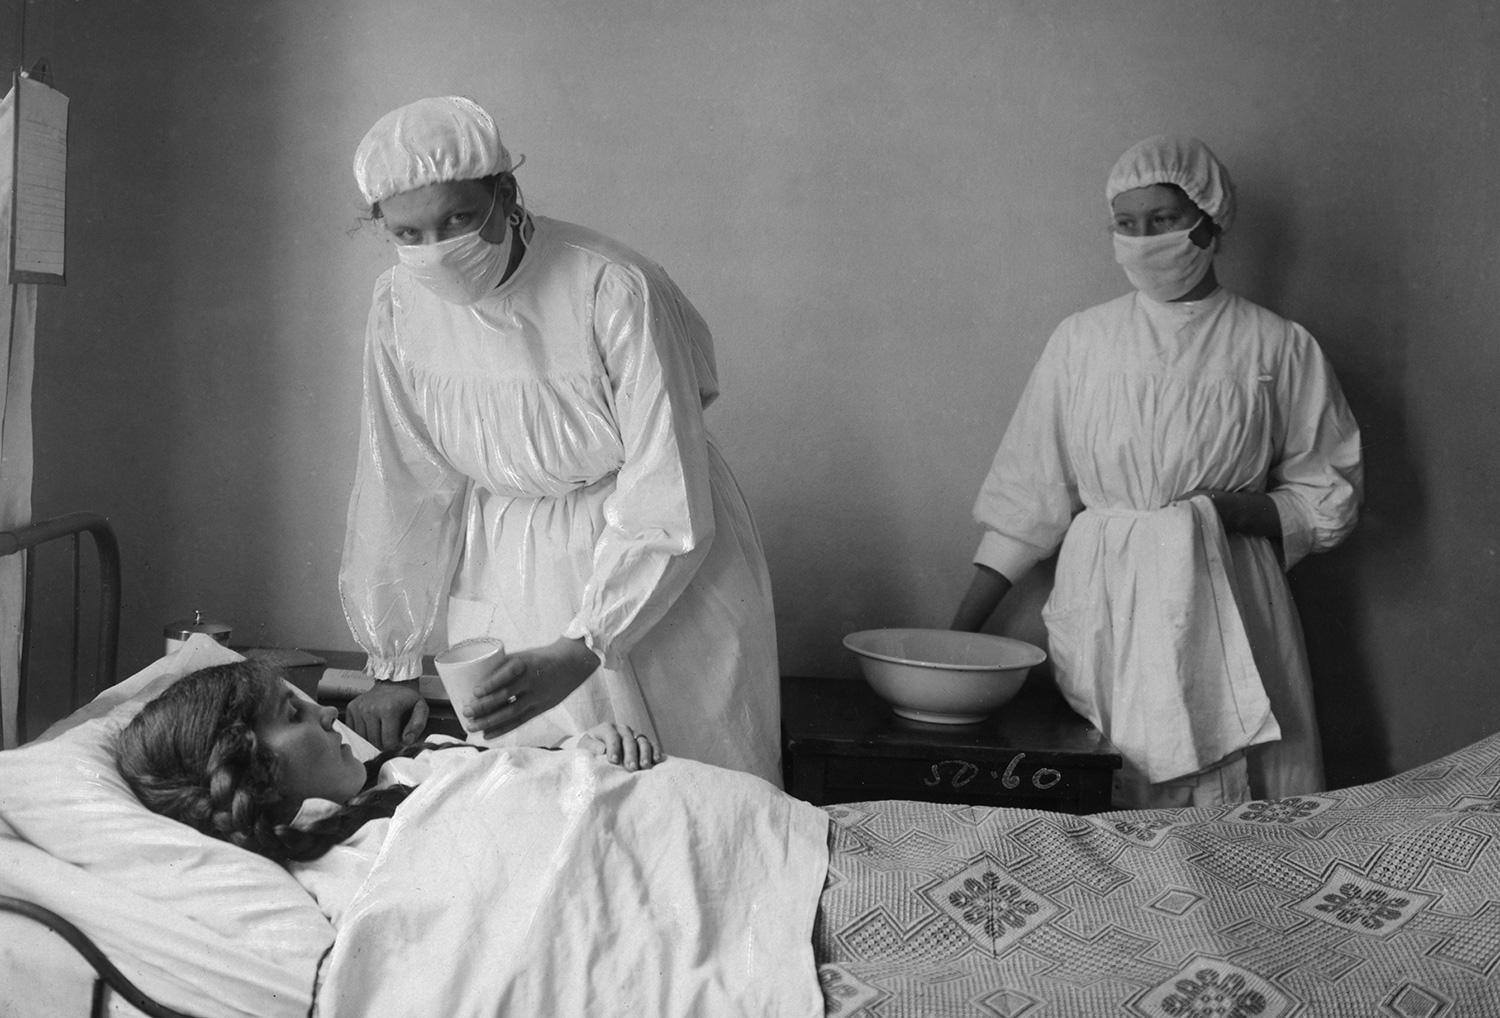 En kvinnlig patient får vård av vårdpersonal i vita kläder och munskydd